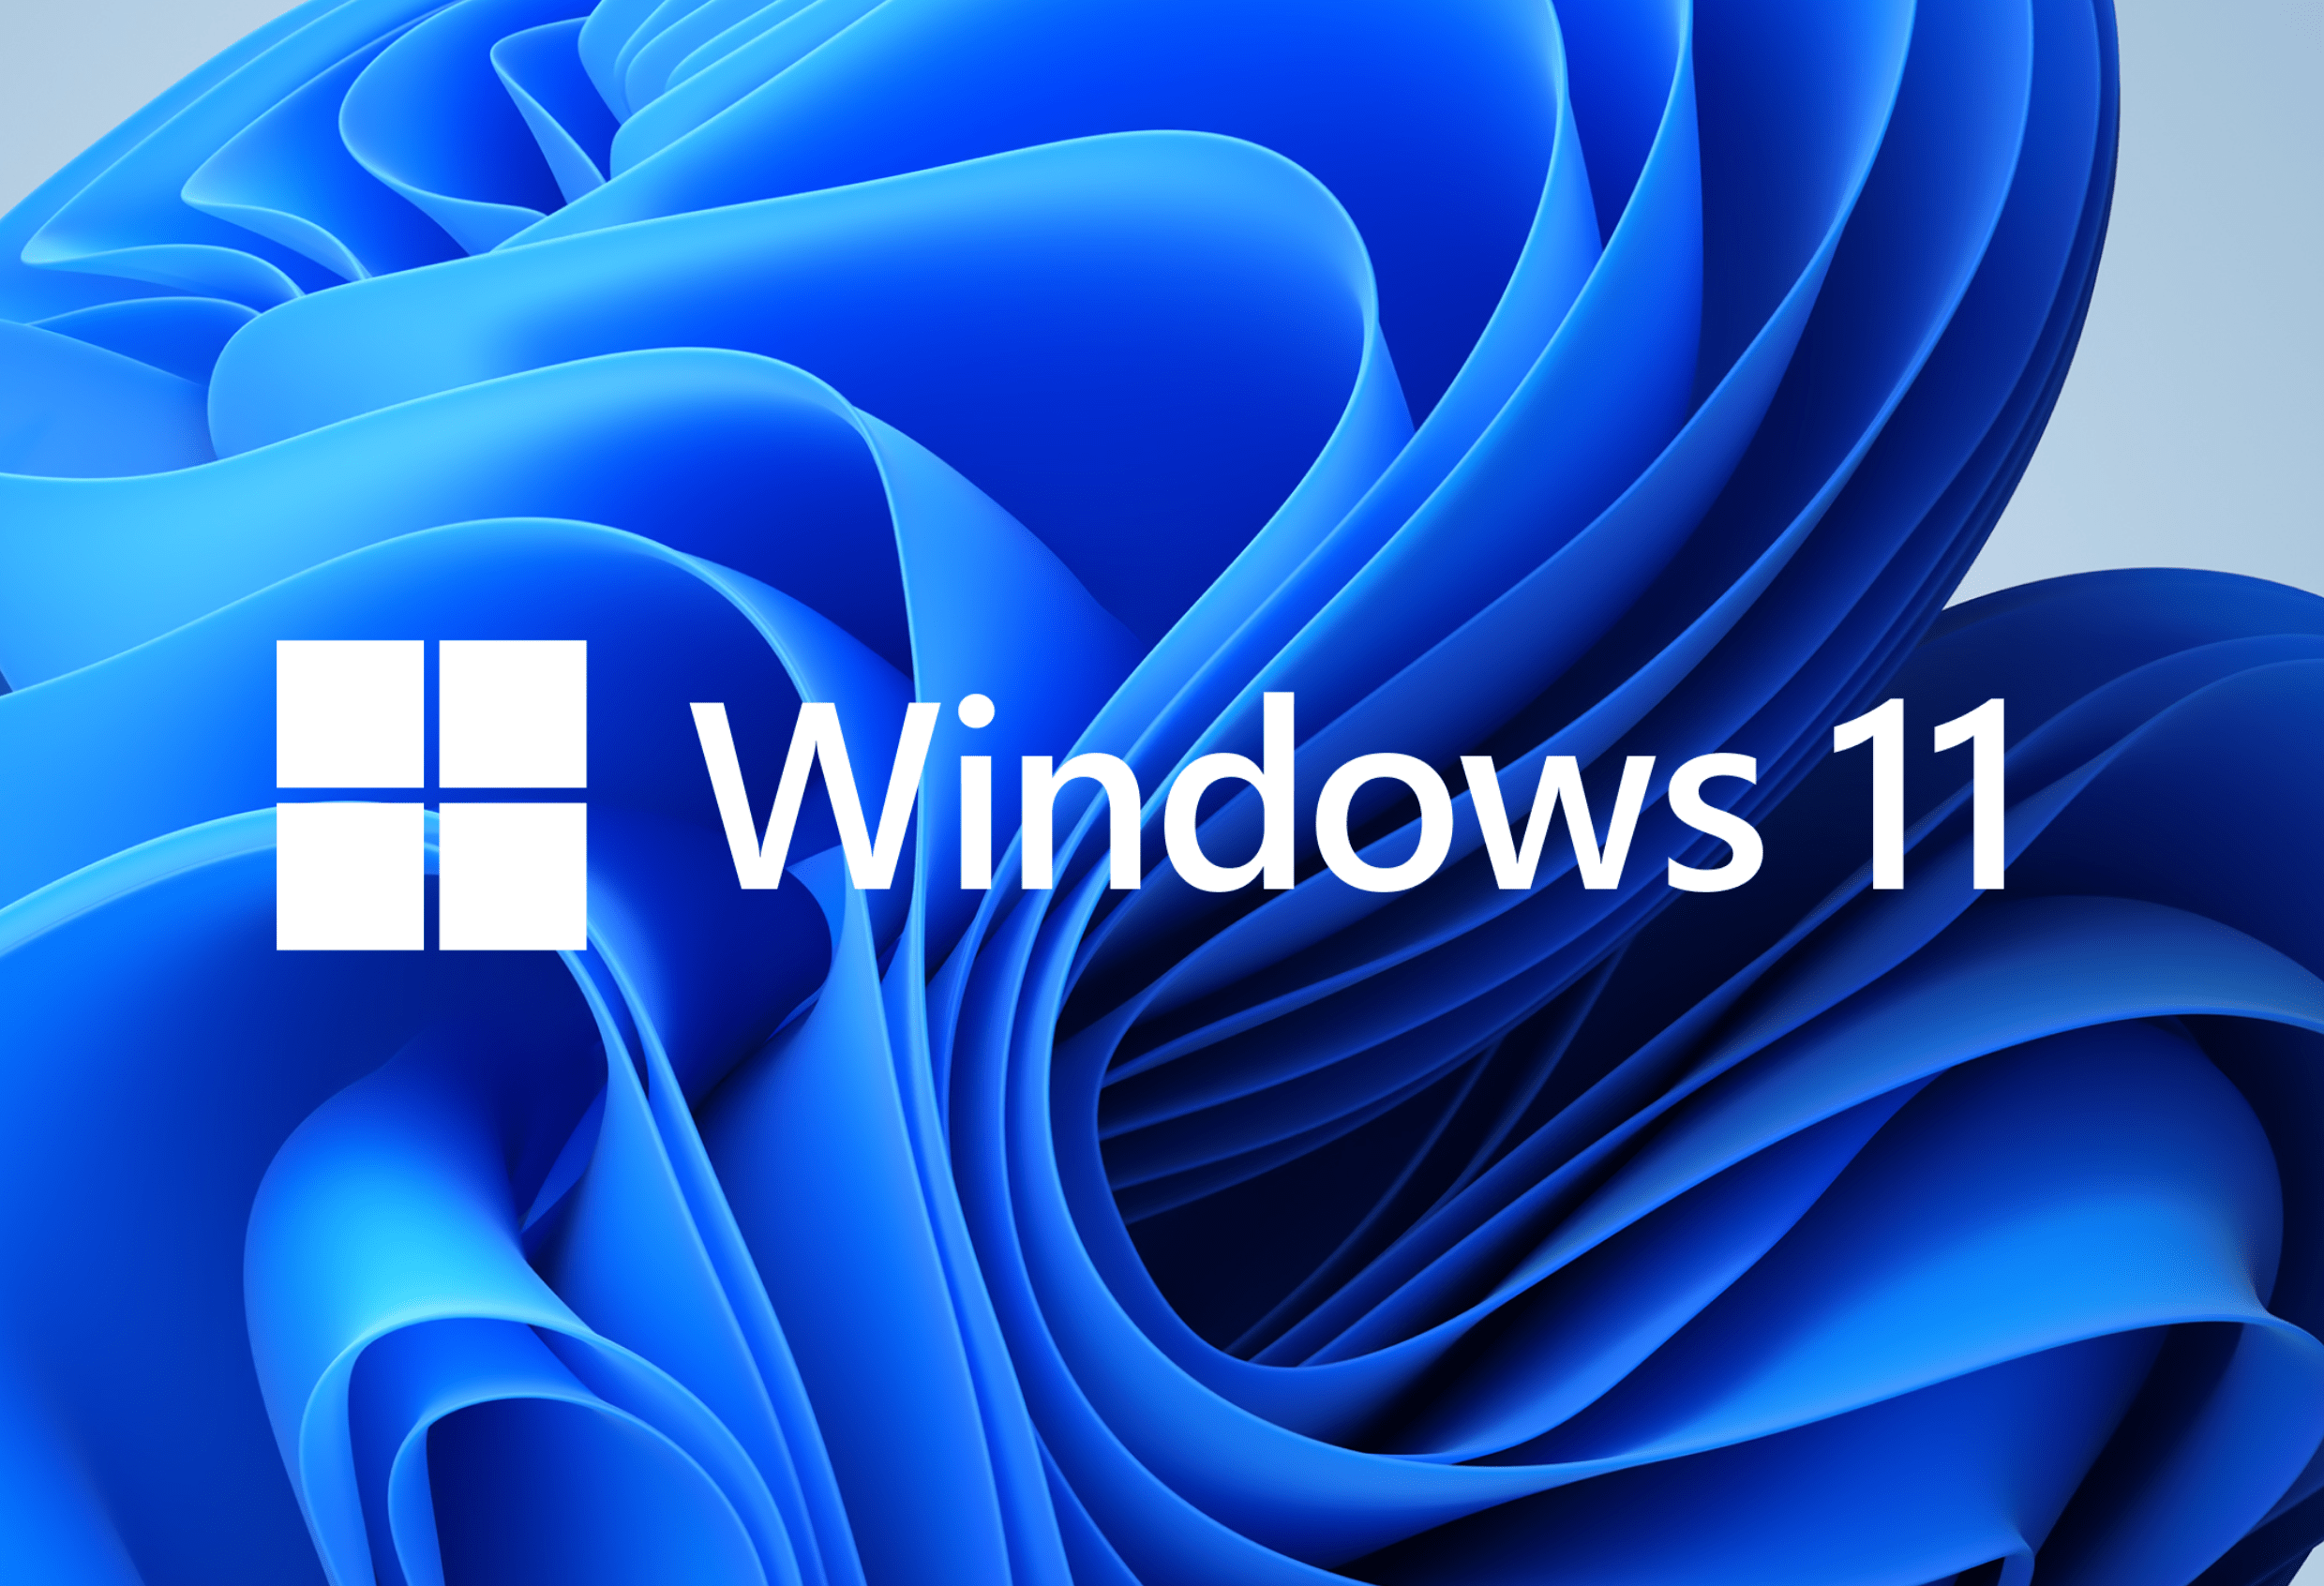 原创windows 11随便装?微软发狠话:硬件不合格,不允许升级